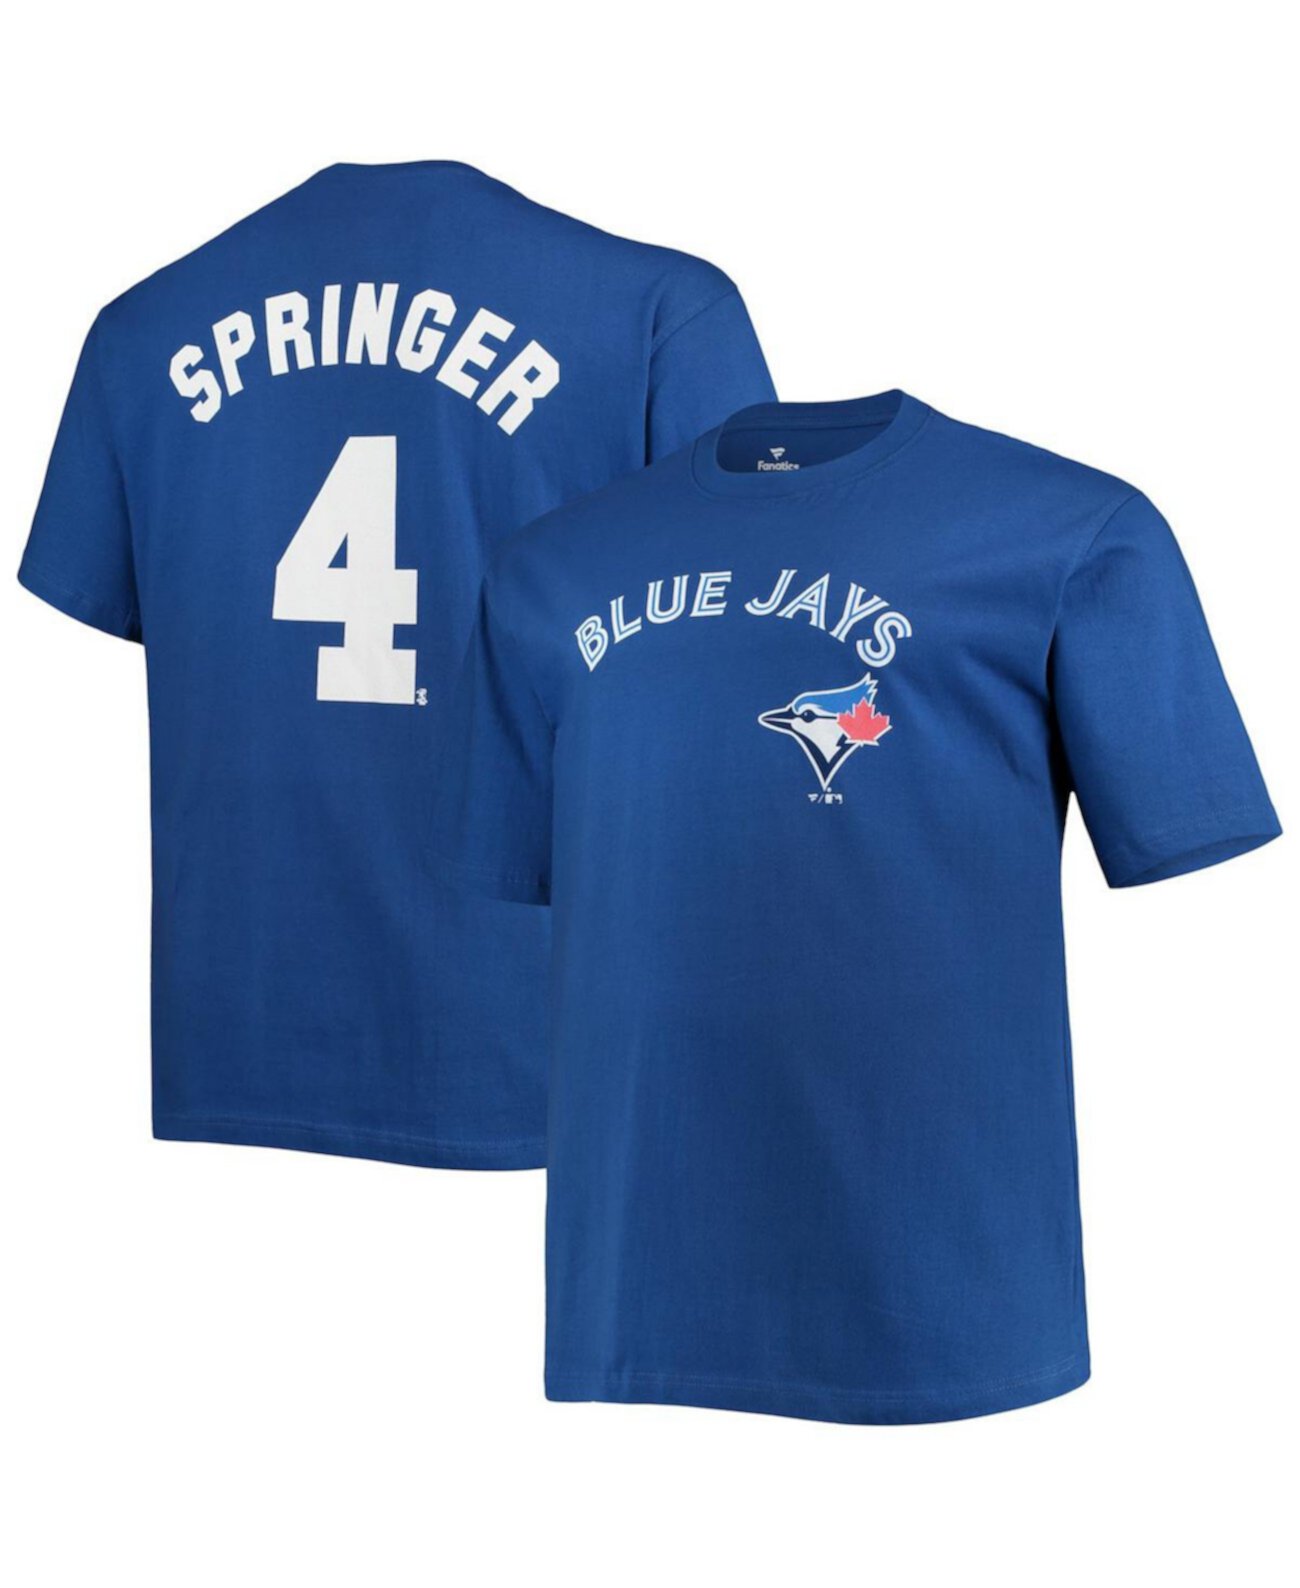 Мужская футболка George Springer Royal Toronto Blue Jays Big and Tall с именем и номером Profile